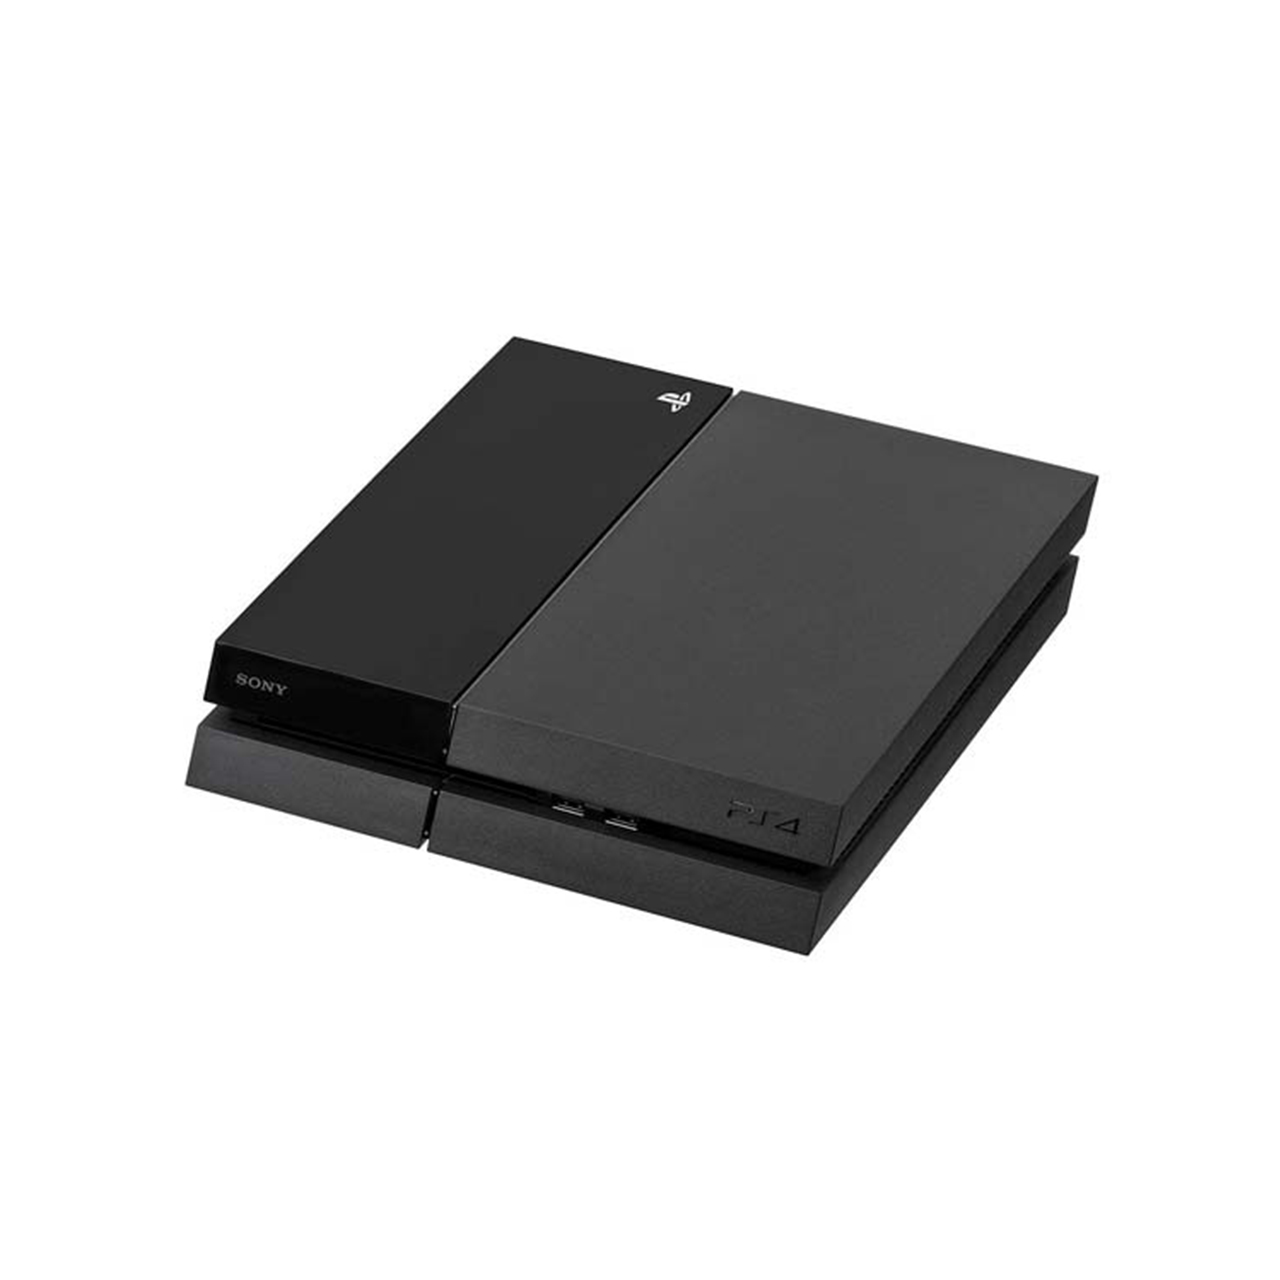 کنسول بازی سونی مدل Playstation 4 Fat ظرفیت 500 گیگابایت همراه با دو دسته – استوک – همراه بازی